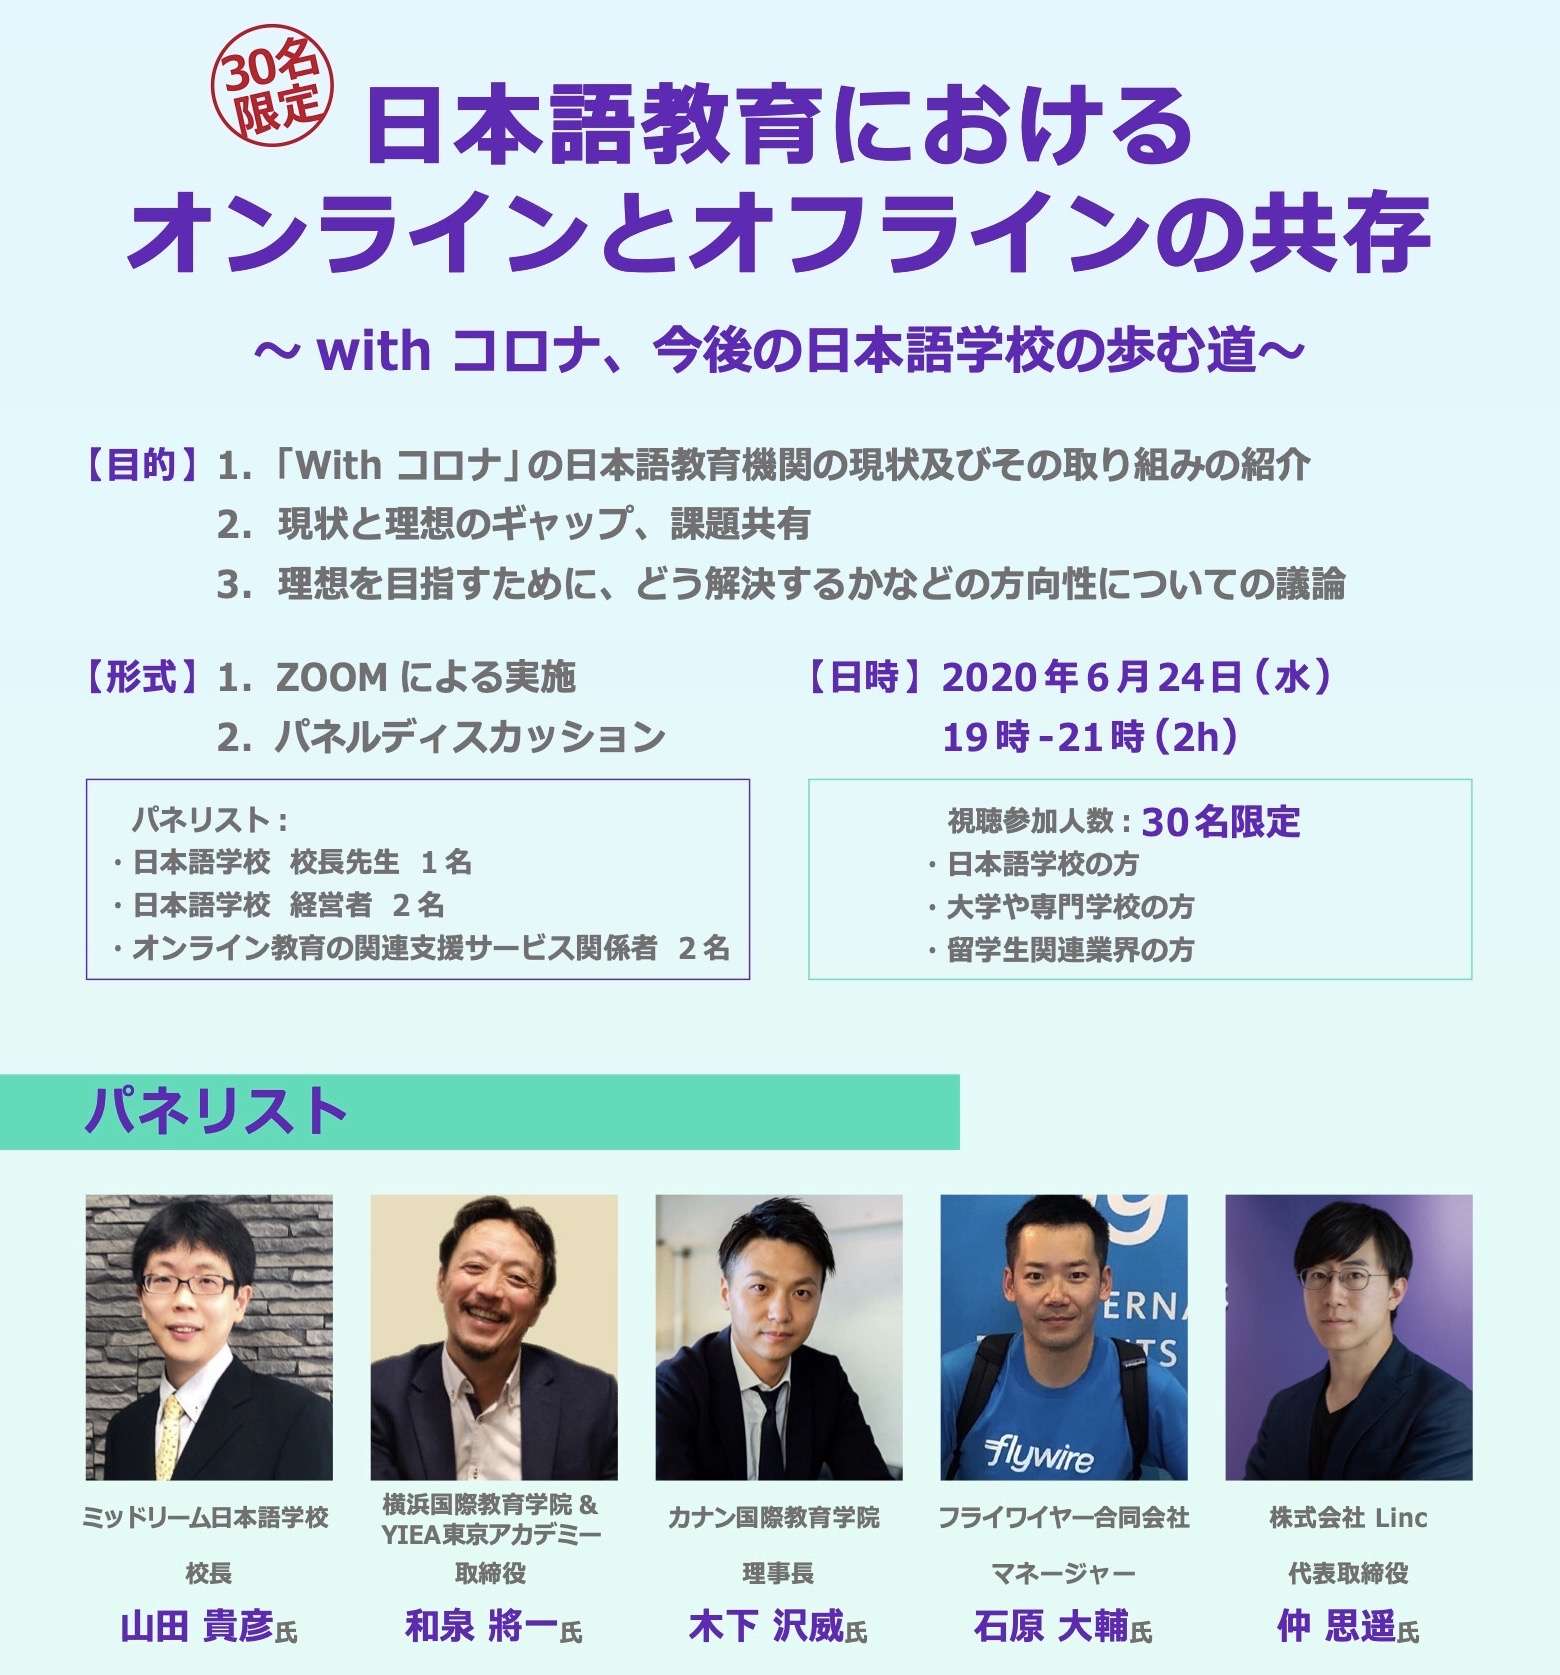 パネリストとして参加「日本語教育におけるオンラインとオフラインの共存」